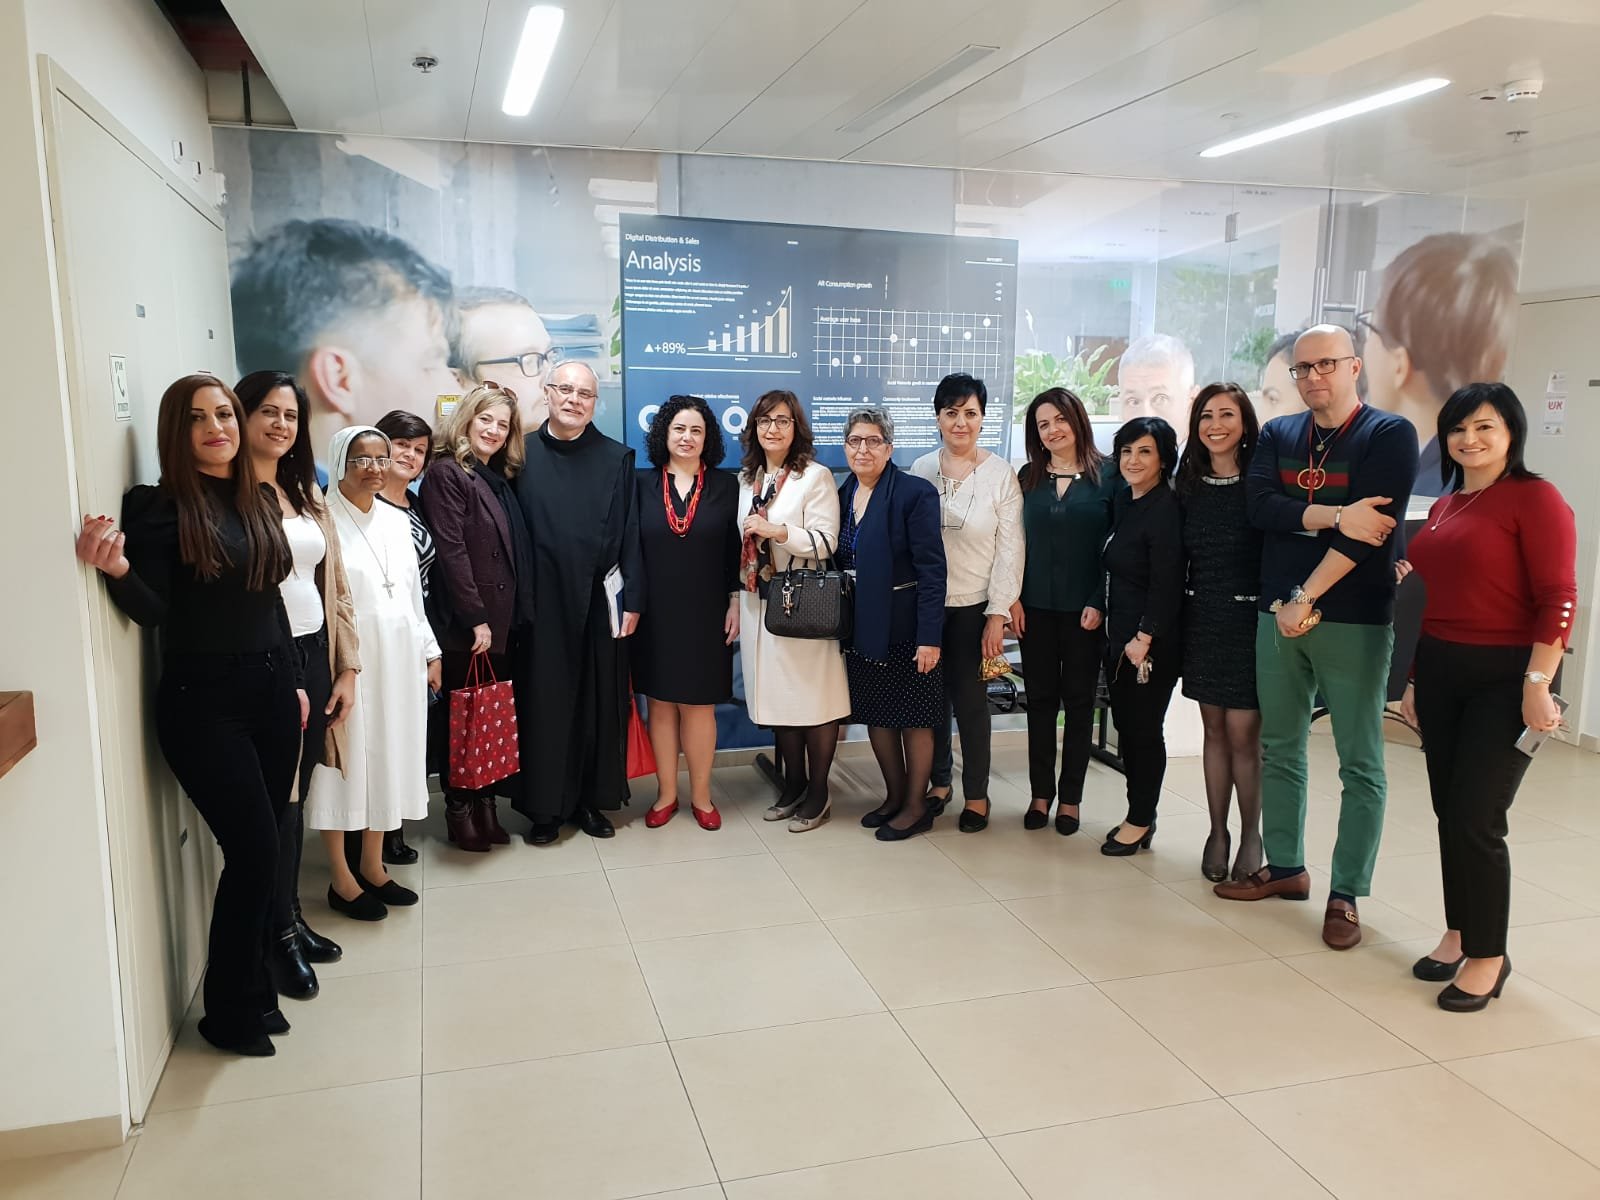 سفيرات مستشفى الناصرة الإنجليزي في جولة زيارات خاصة لمؤسسات طبية في الناصرة بمناسبة الأعياد المجيدة-4